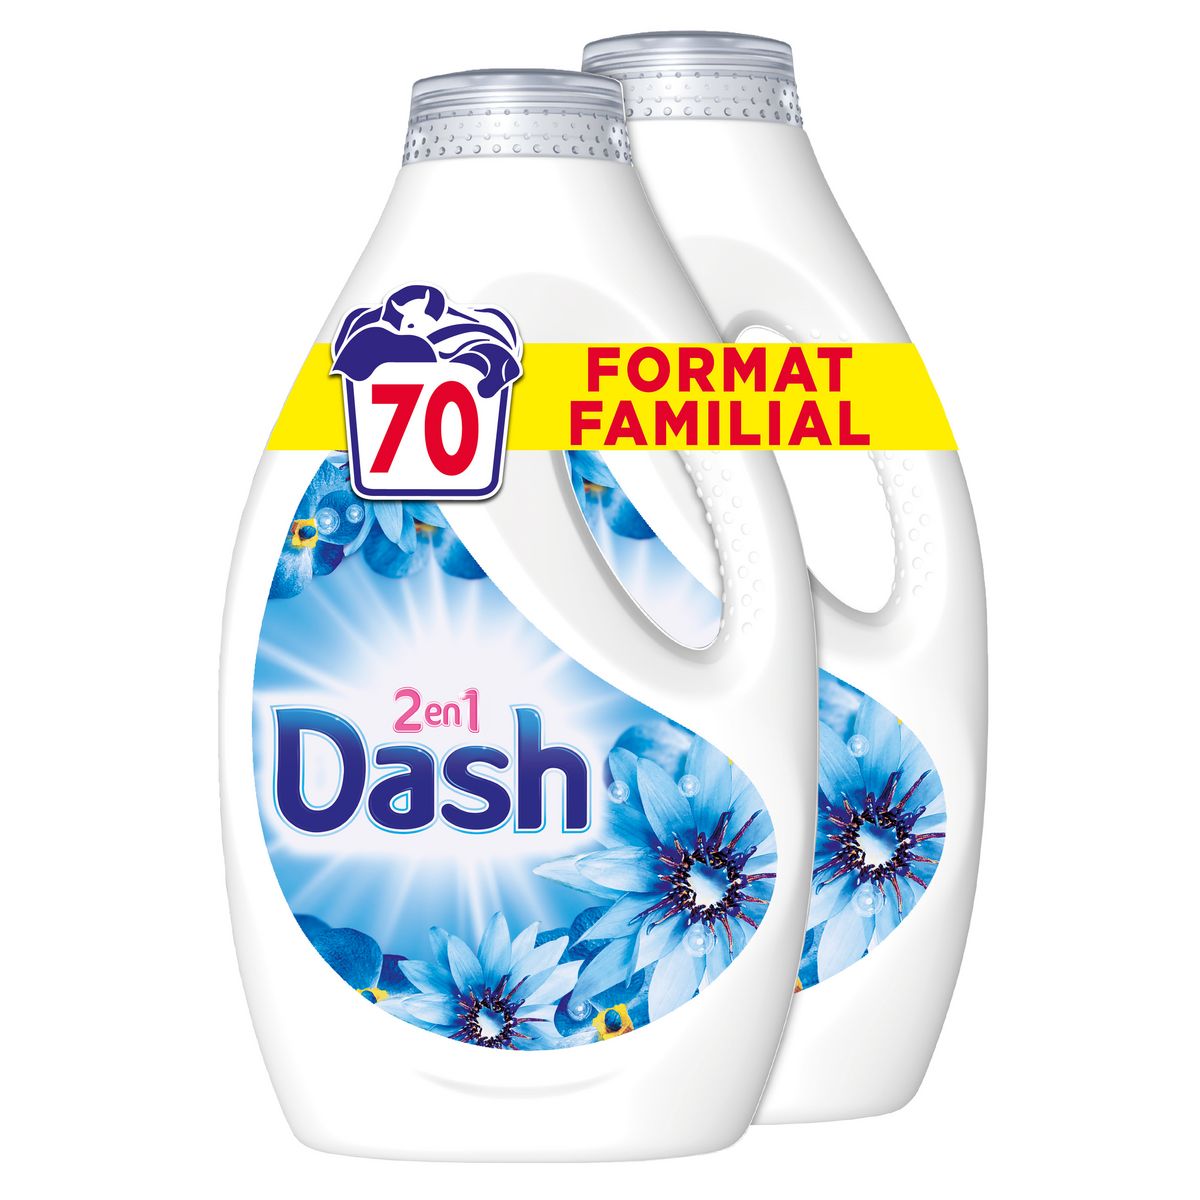 Dash 2en1 Lessive Liquide, 70 Lavages (3.5L), Envolée D'air